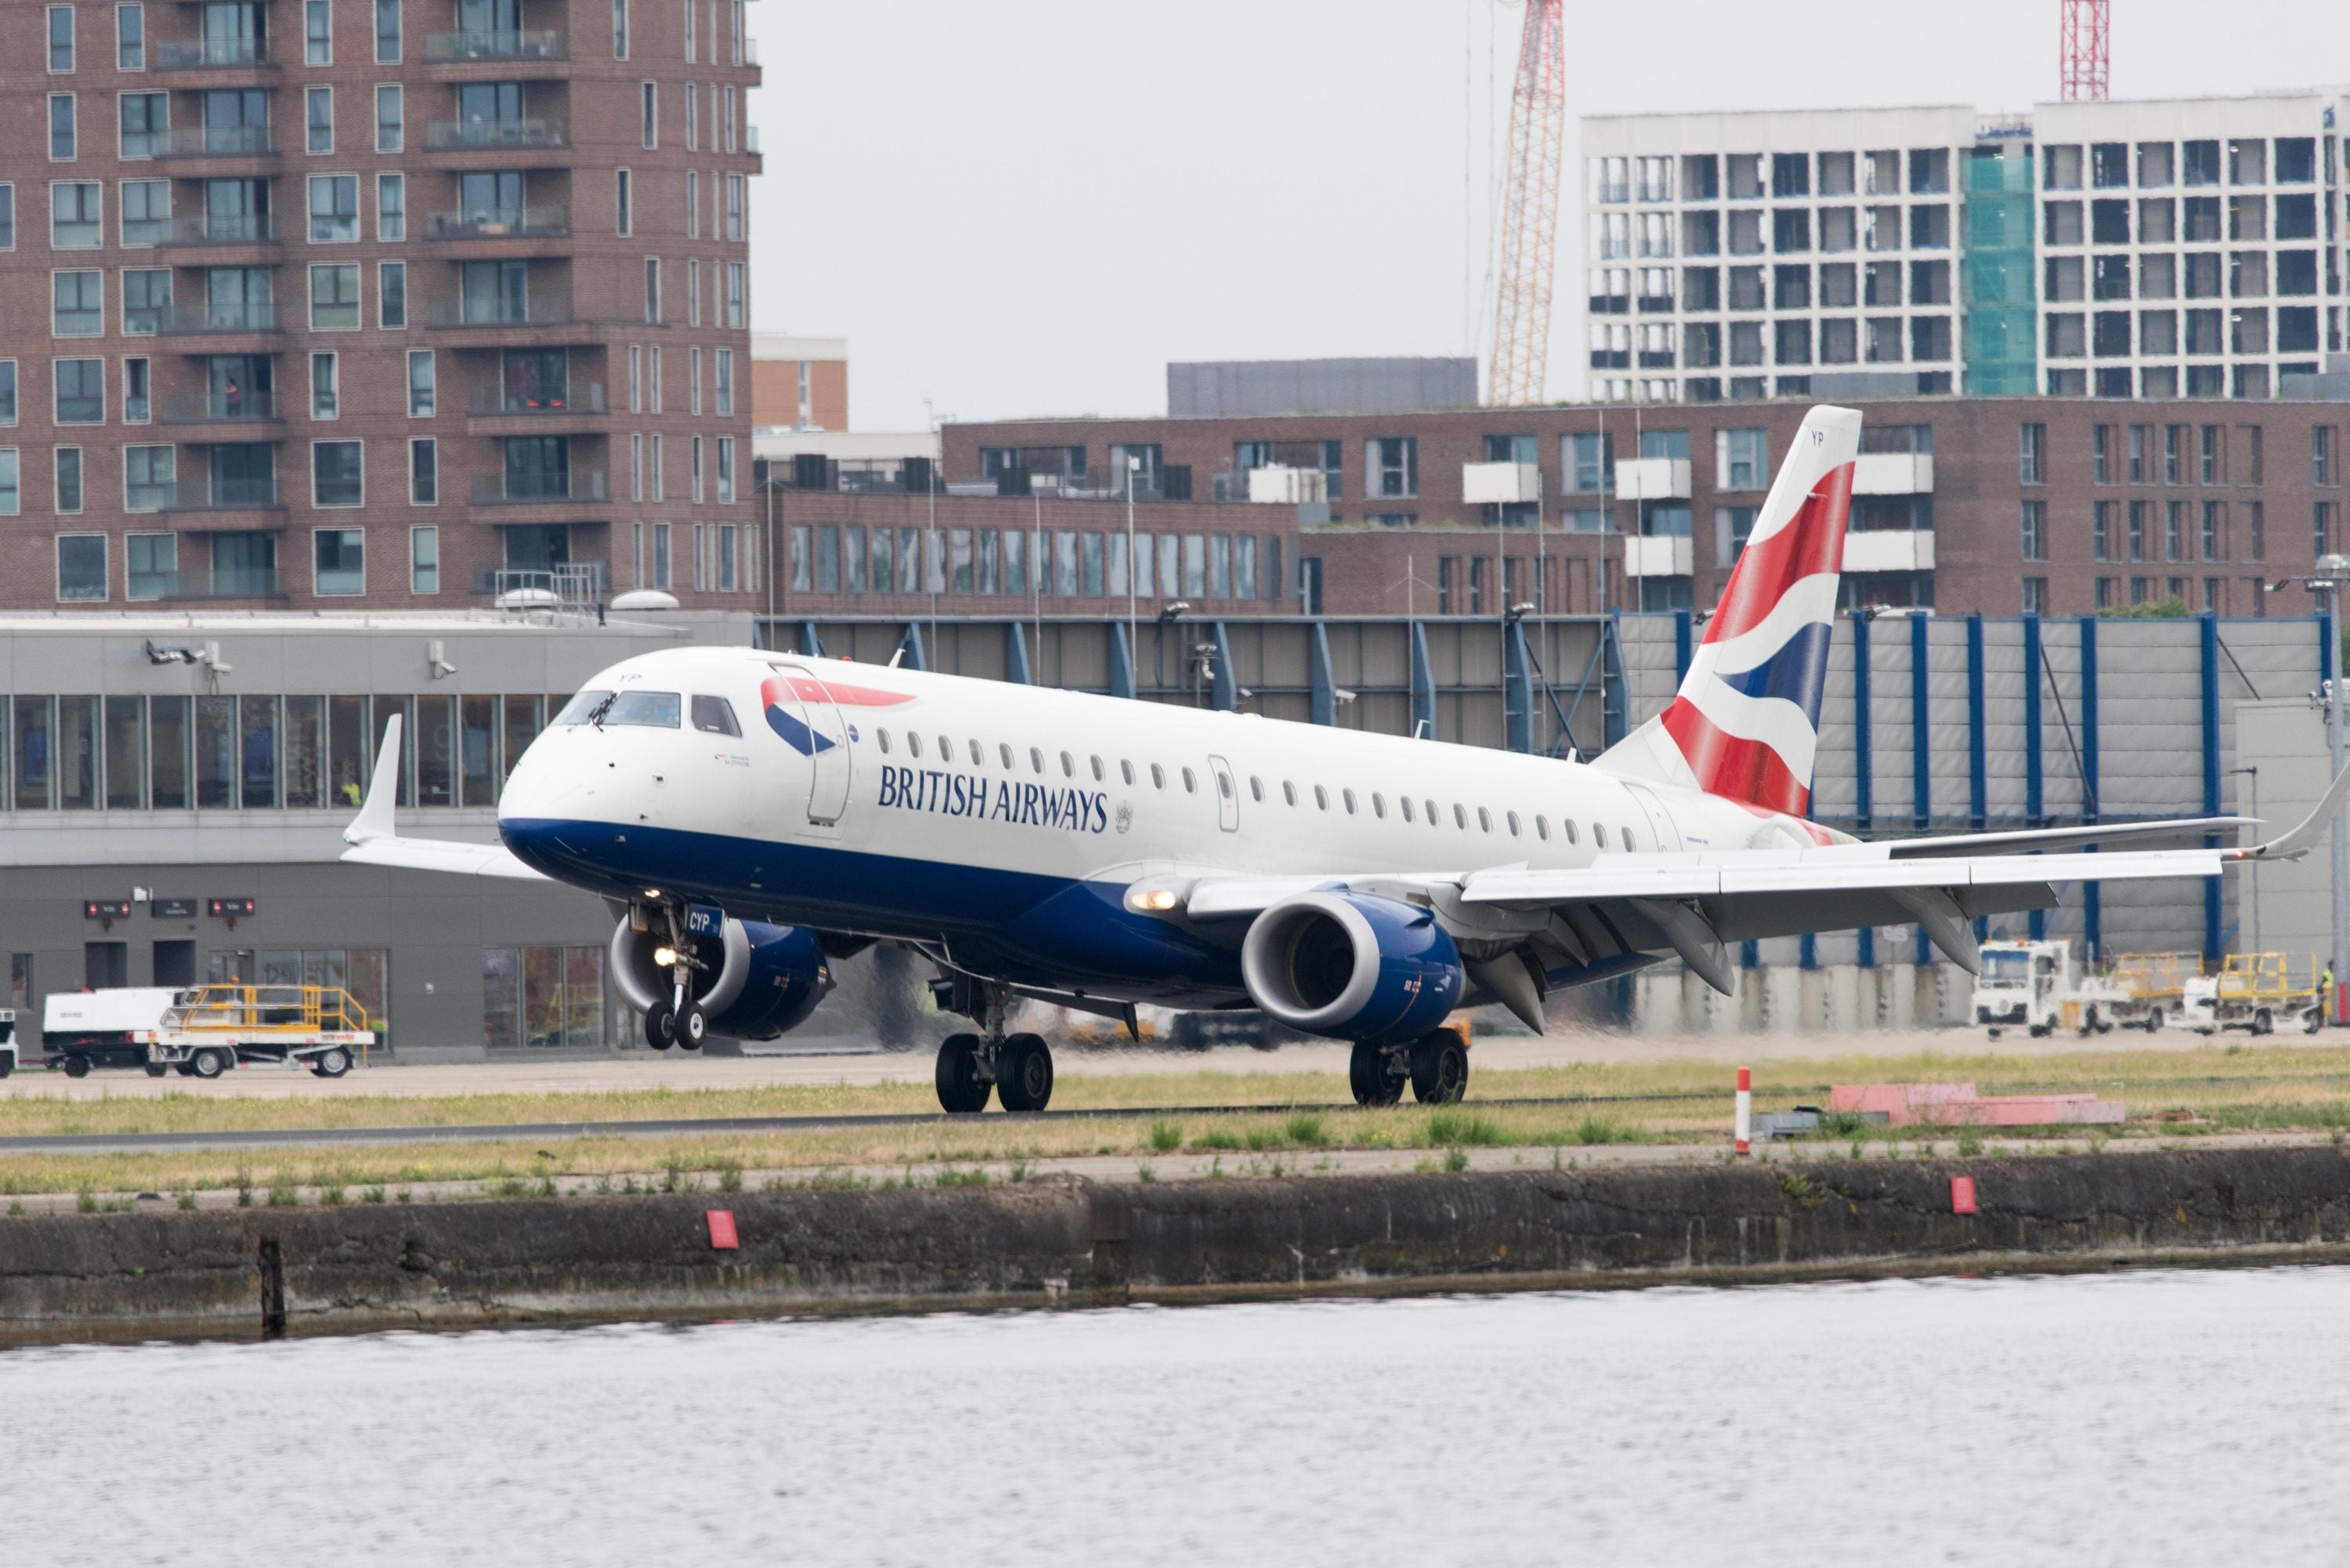 British Airways Plane on a Runway